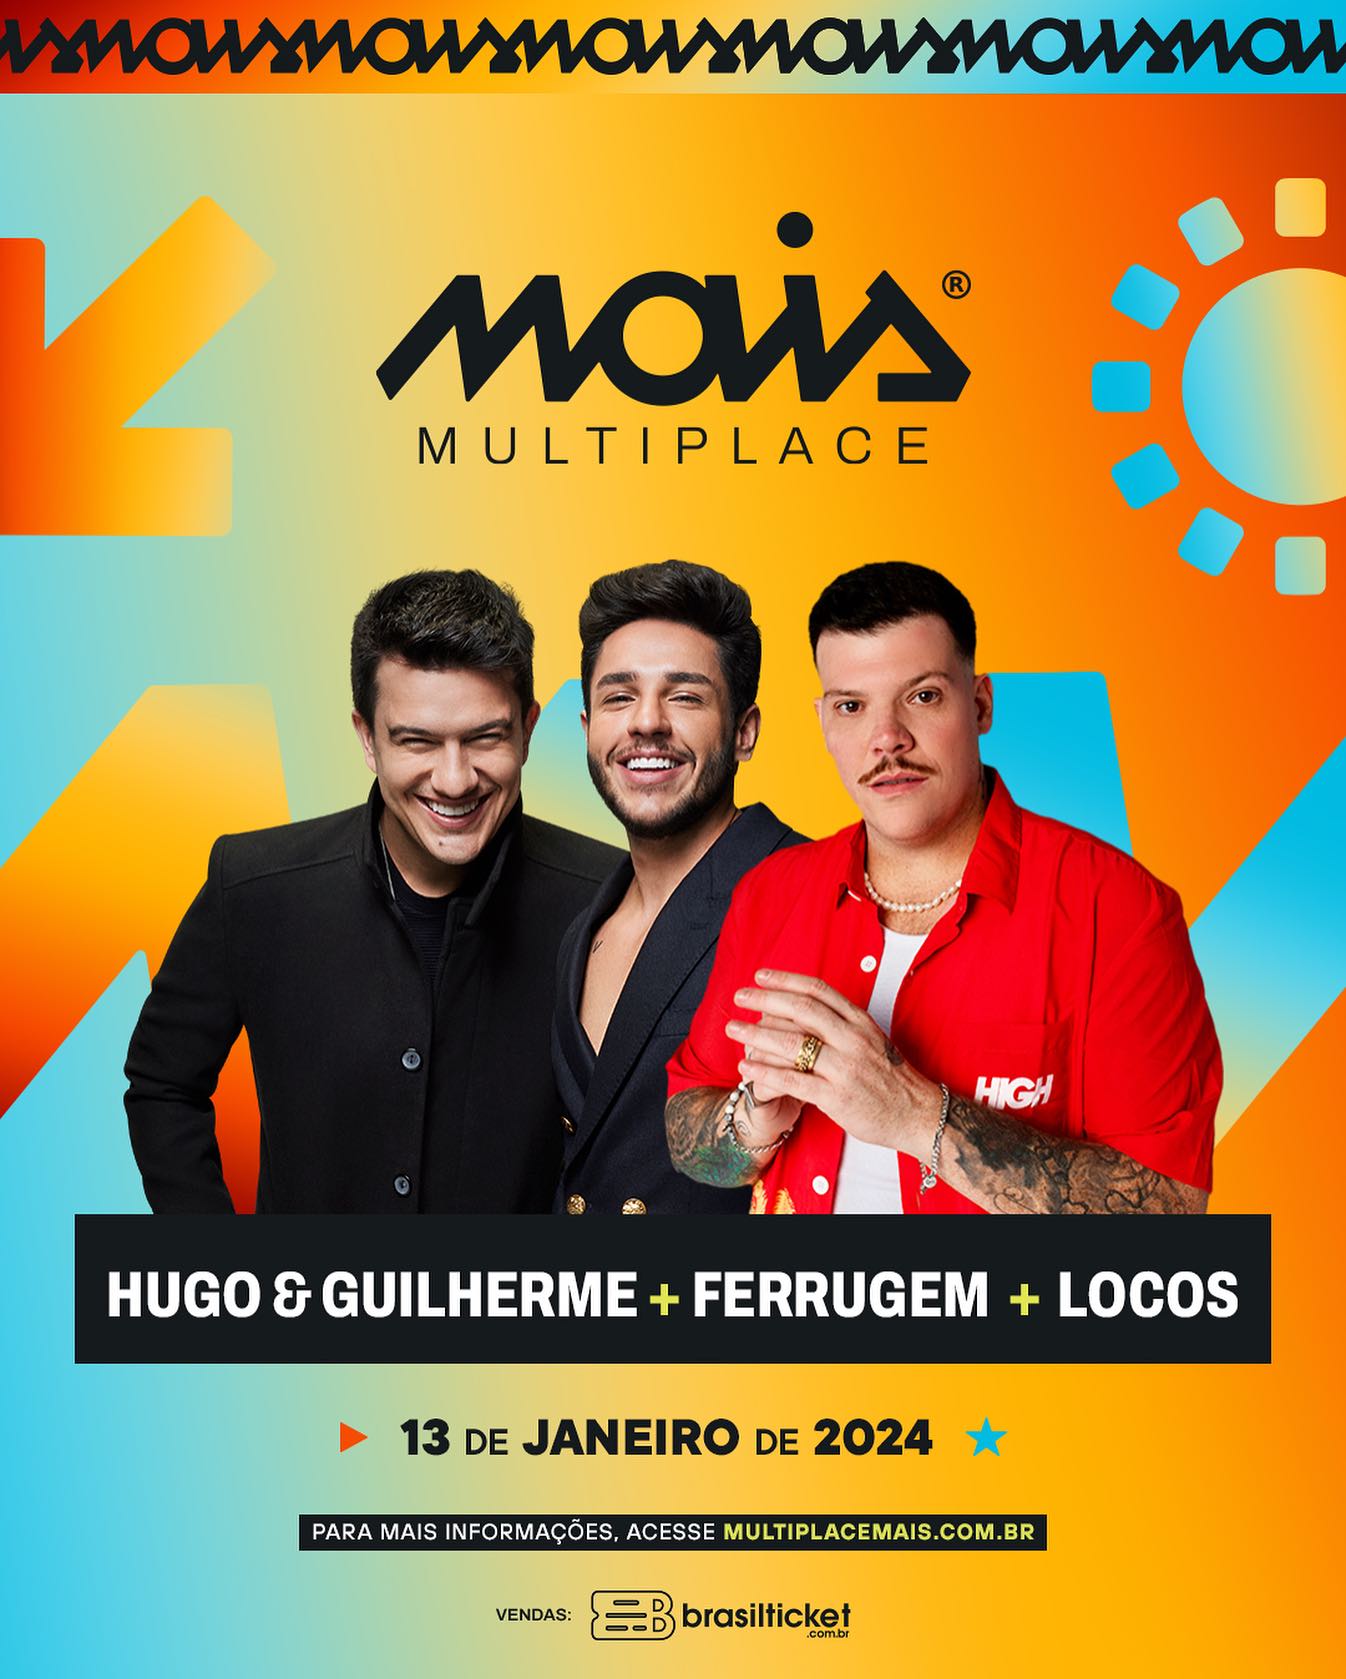 Hugo e Guilherme + Ferrugem + Locos - Multiplace Mais